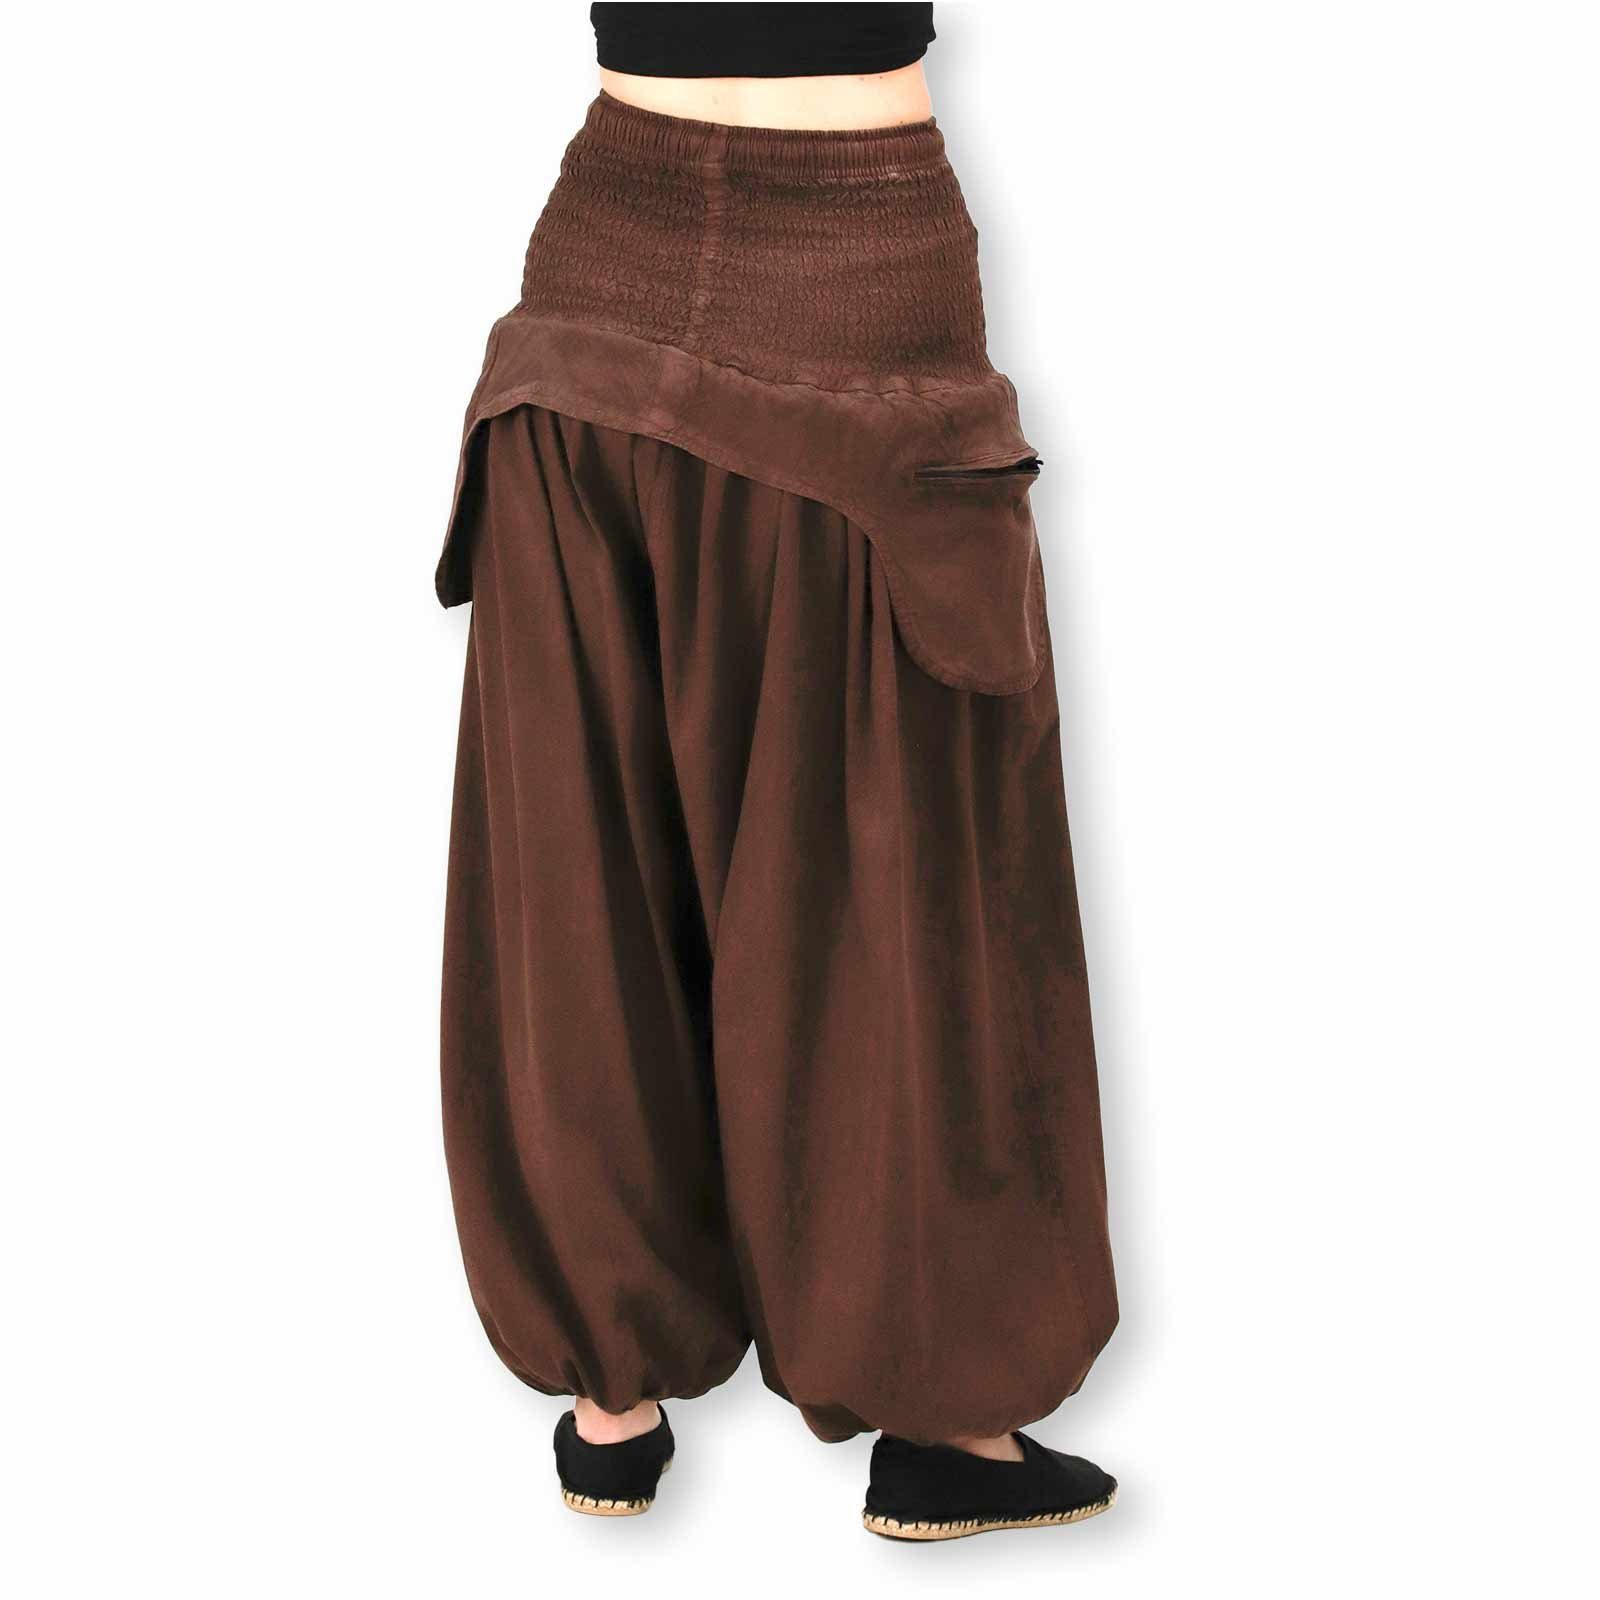 Braun Schürzentaschen MAGIE KUNST Unifarben Haremshose/Jodhpur-Hose praktische Haremshose Vintage UND Damen Hose